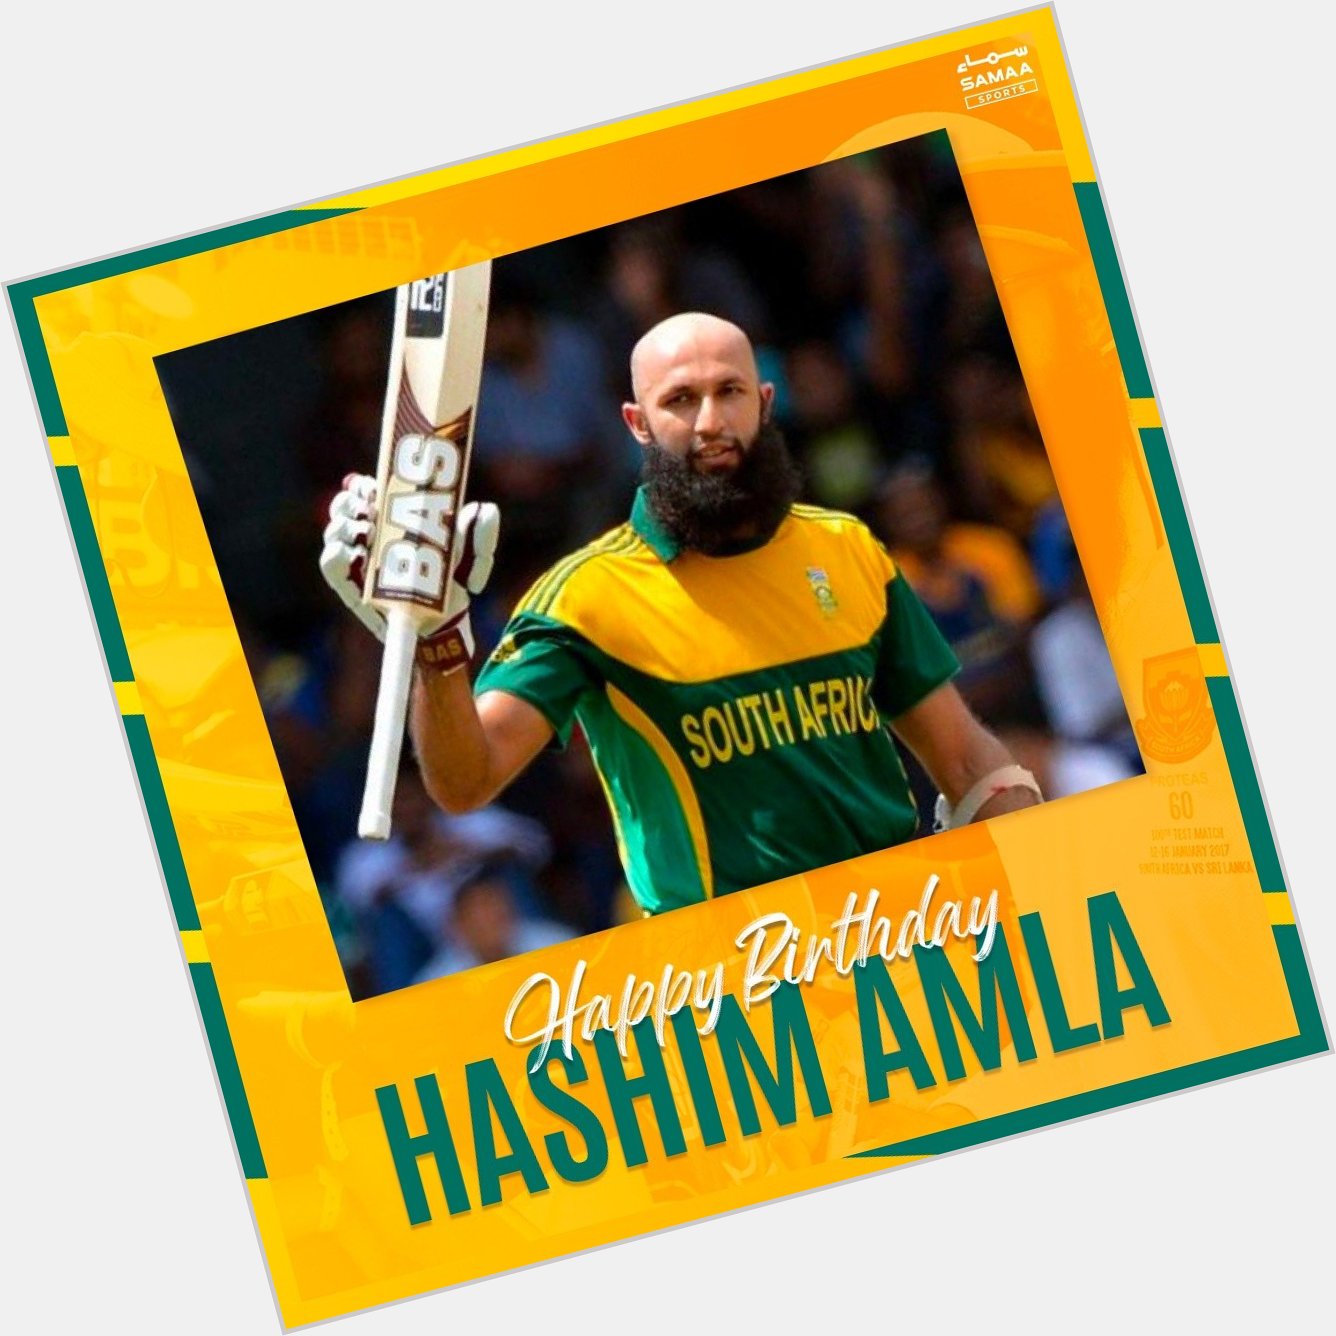 Happy Birthday to legendary South Africa batter Hashim Amla!  